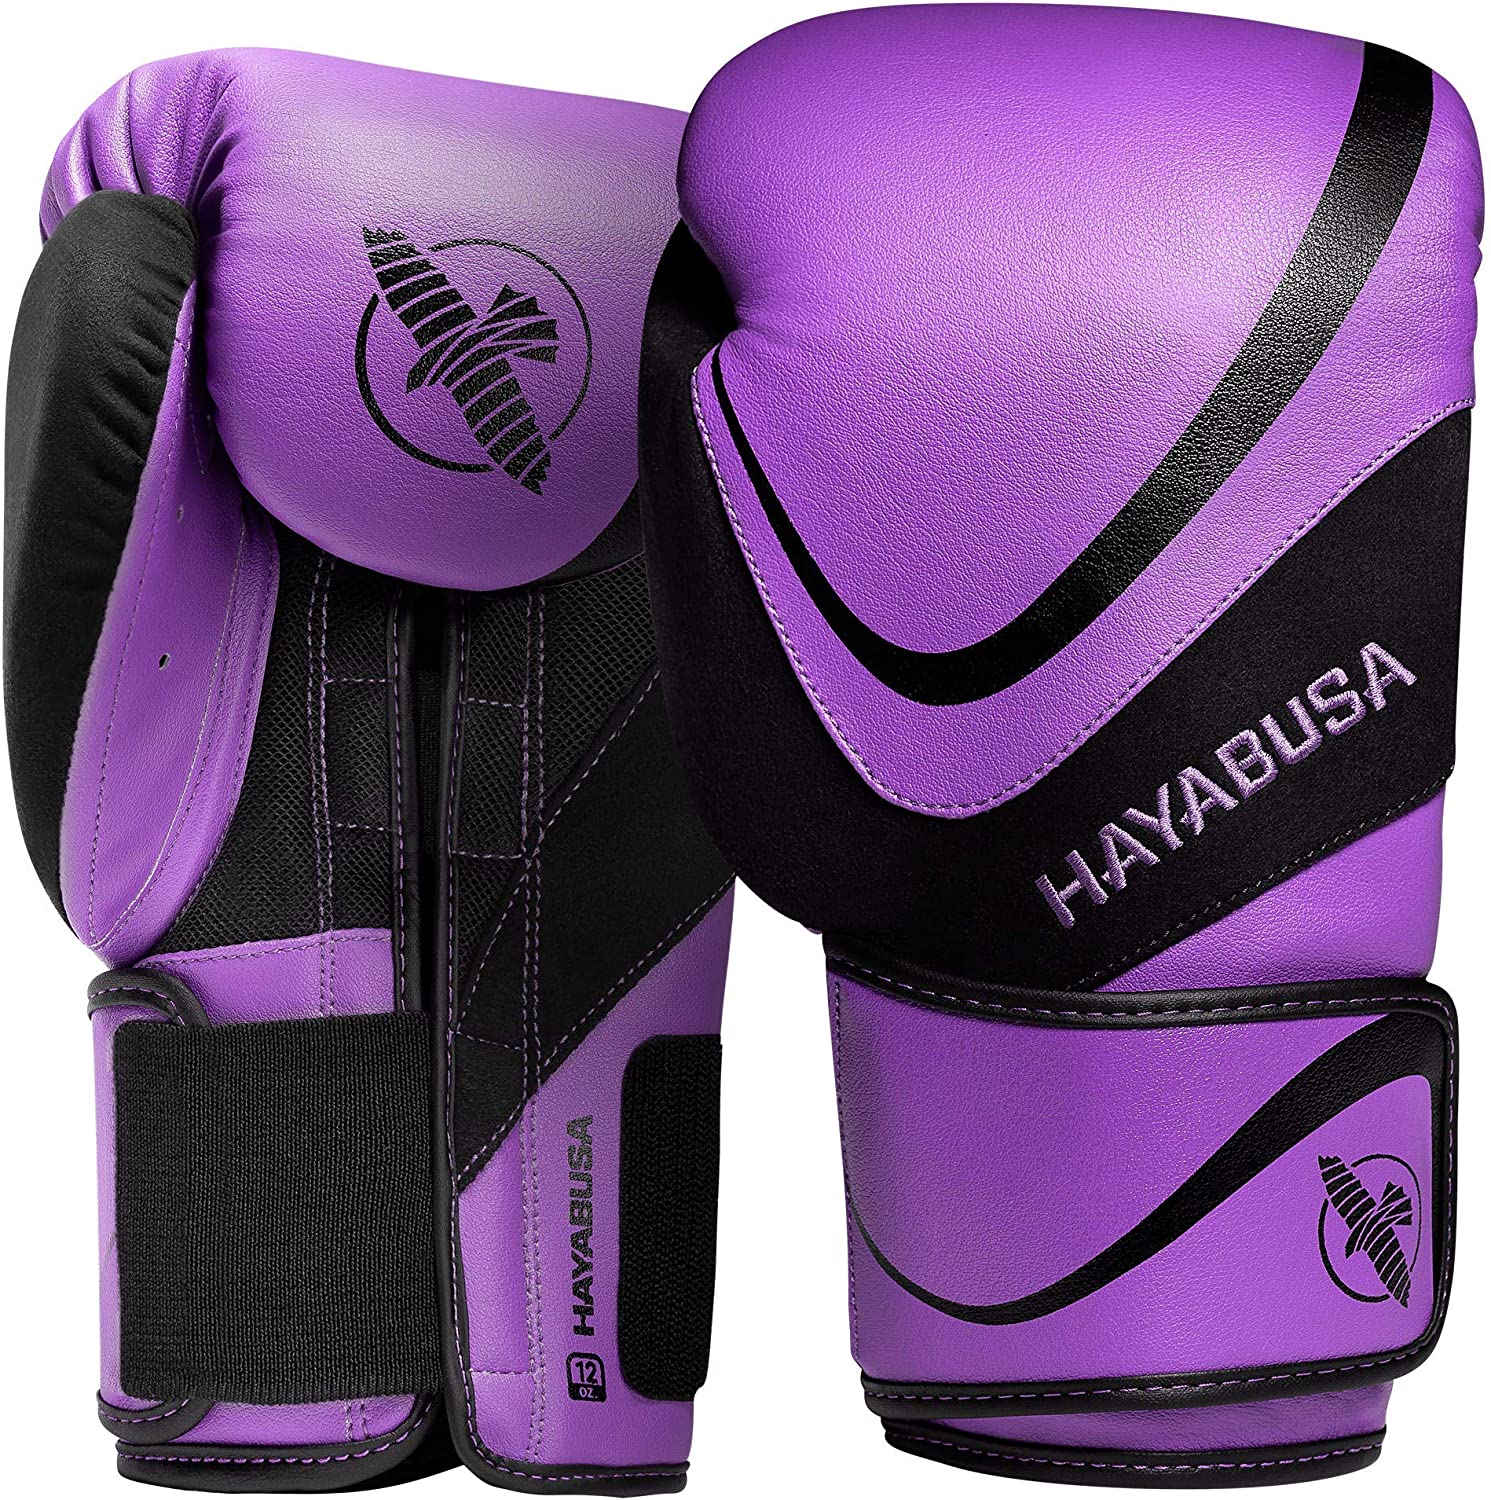 Hayabusa Boxerské rukavice H5 - fialovo/černé